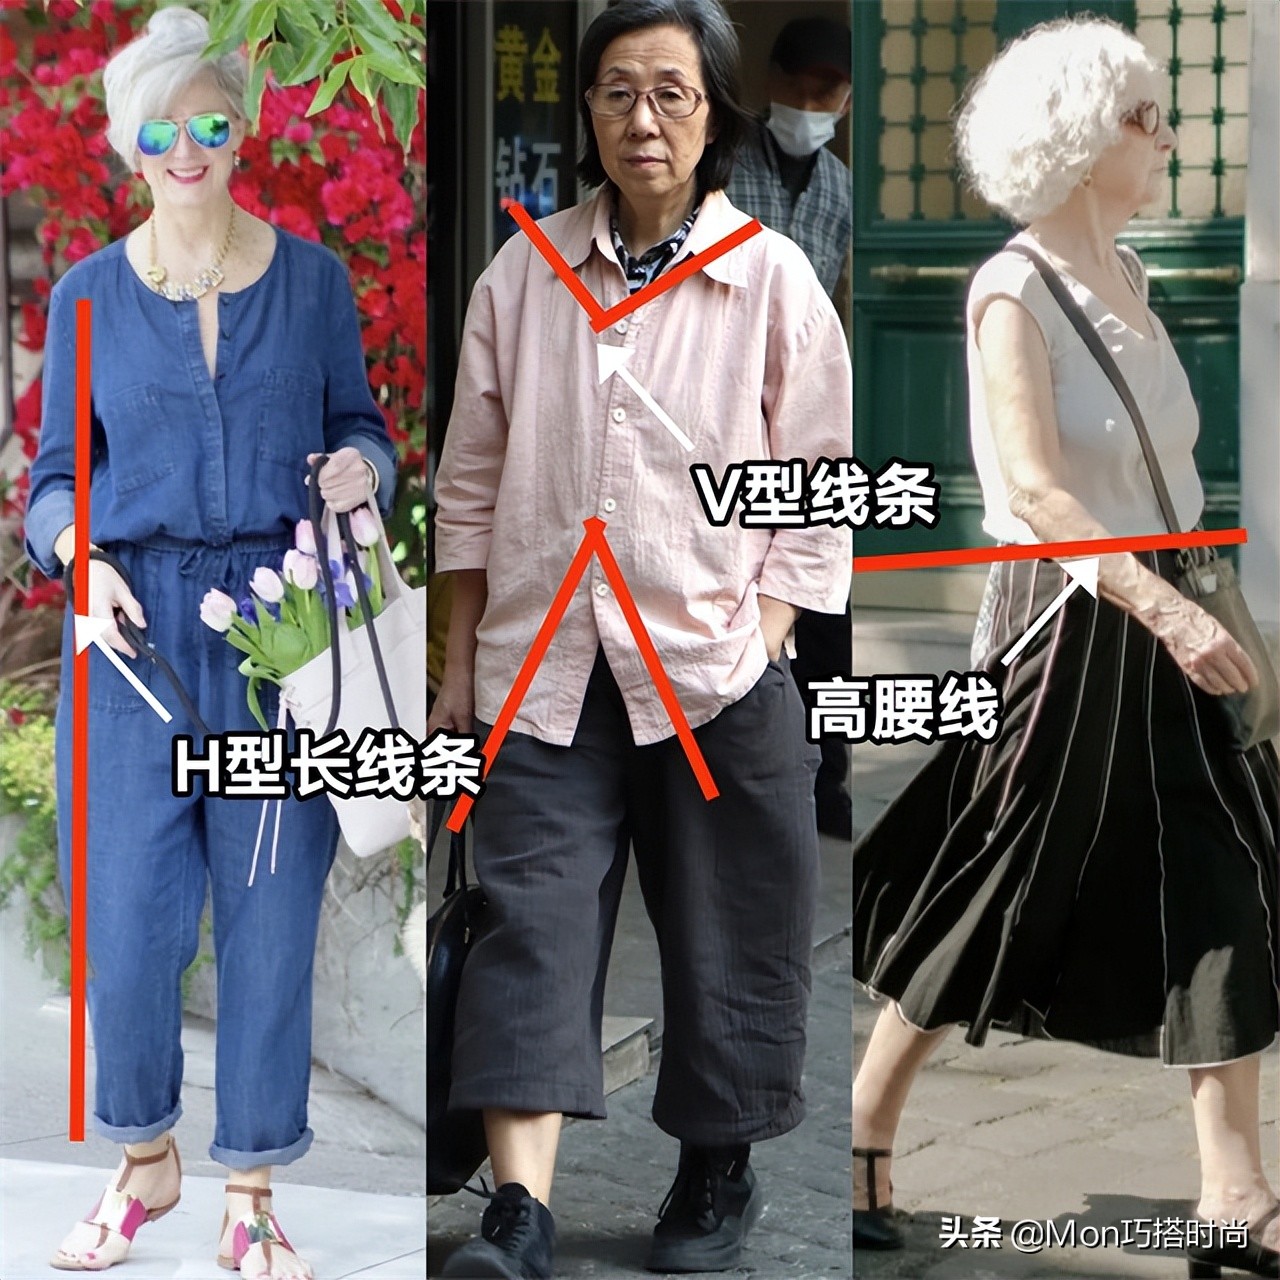 时尚和年龄无关！看这些街拍奶奶就知道：发白、人又老，照样很美